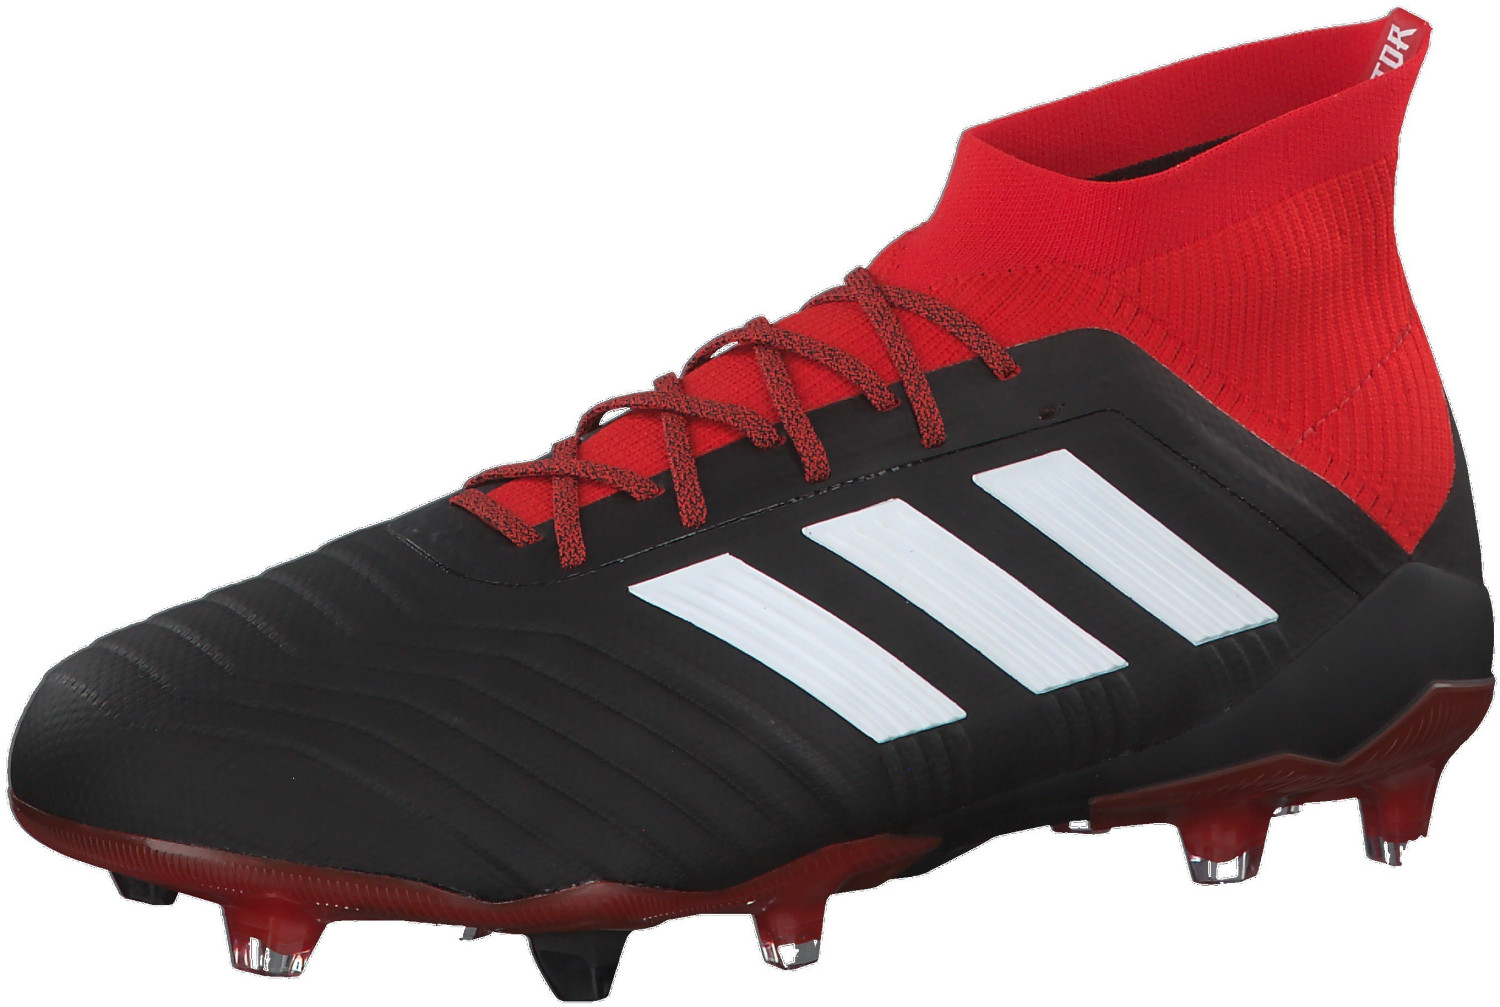 Adidas Football Boot Predator 18.1 FG DB2038 core black / ftwr white / red